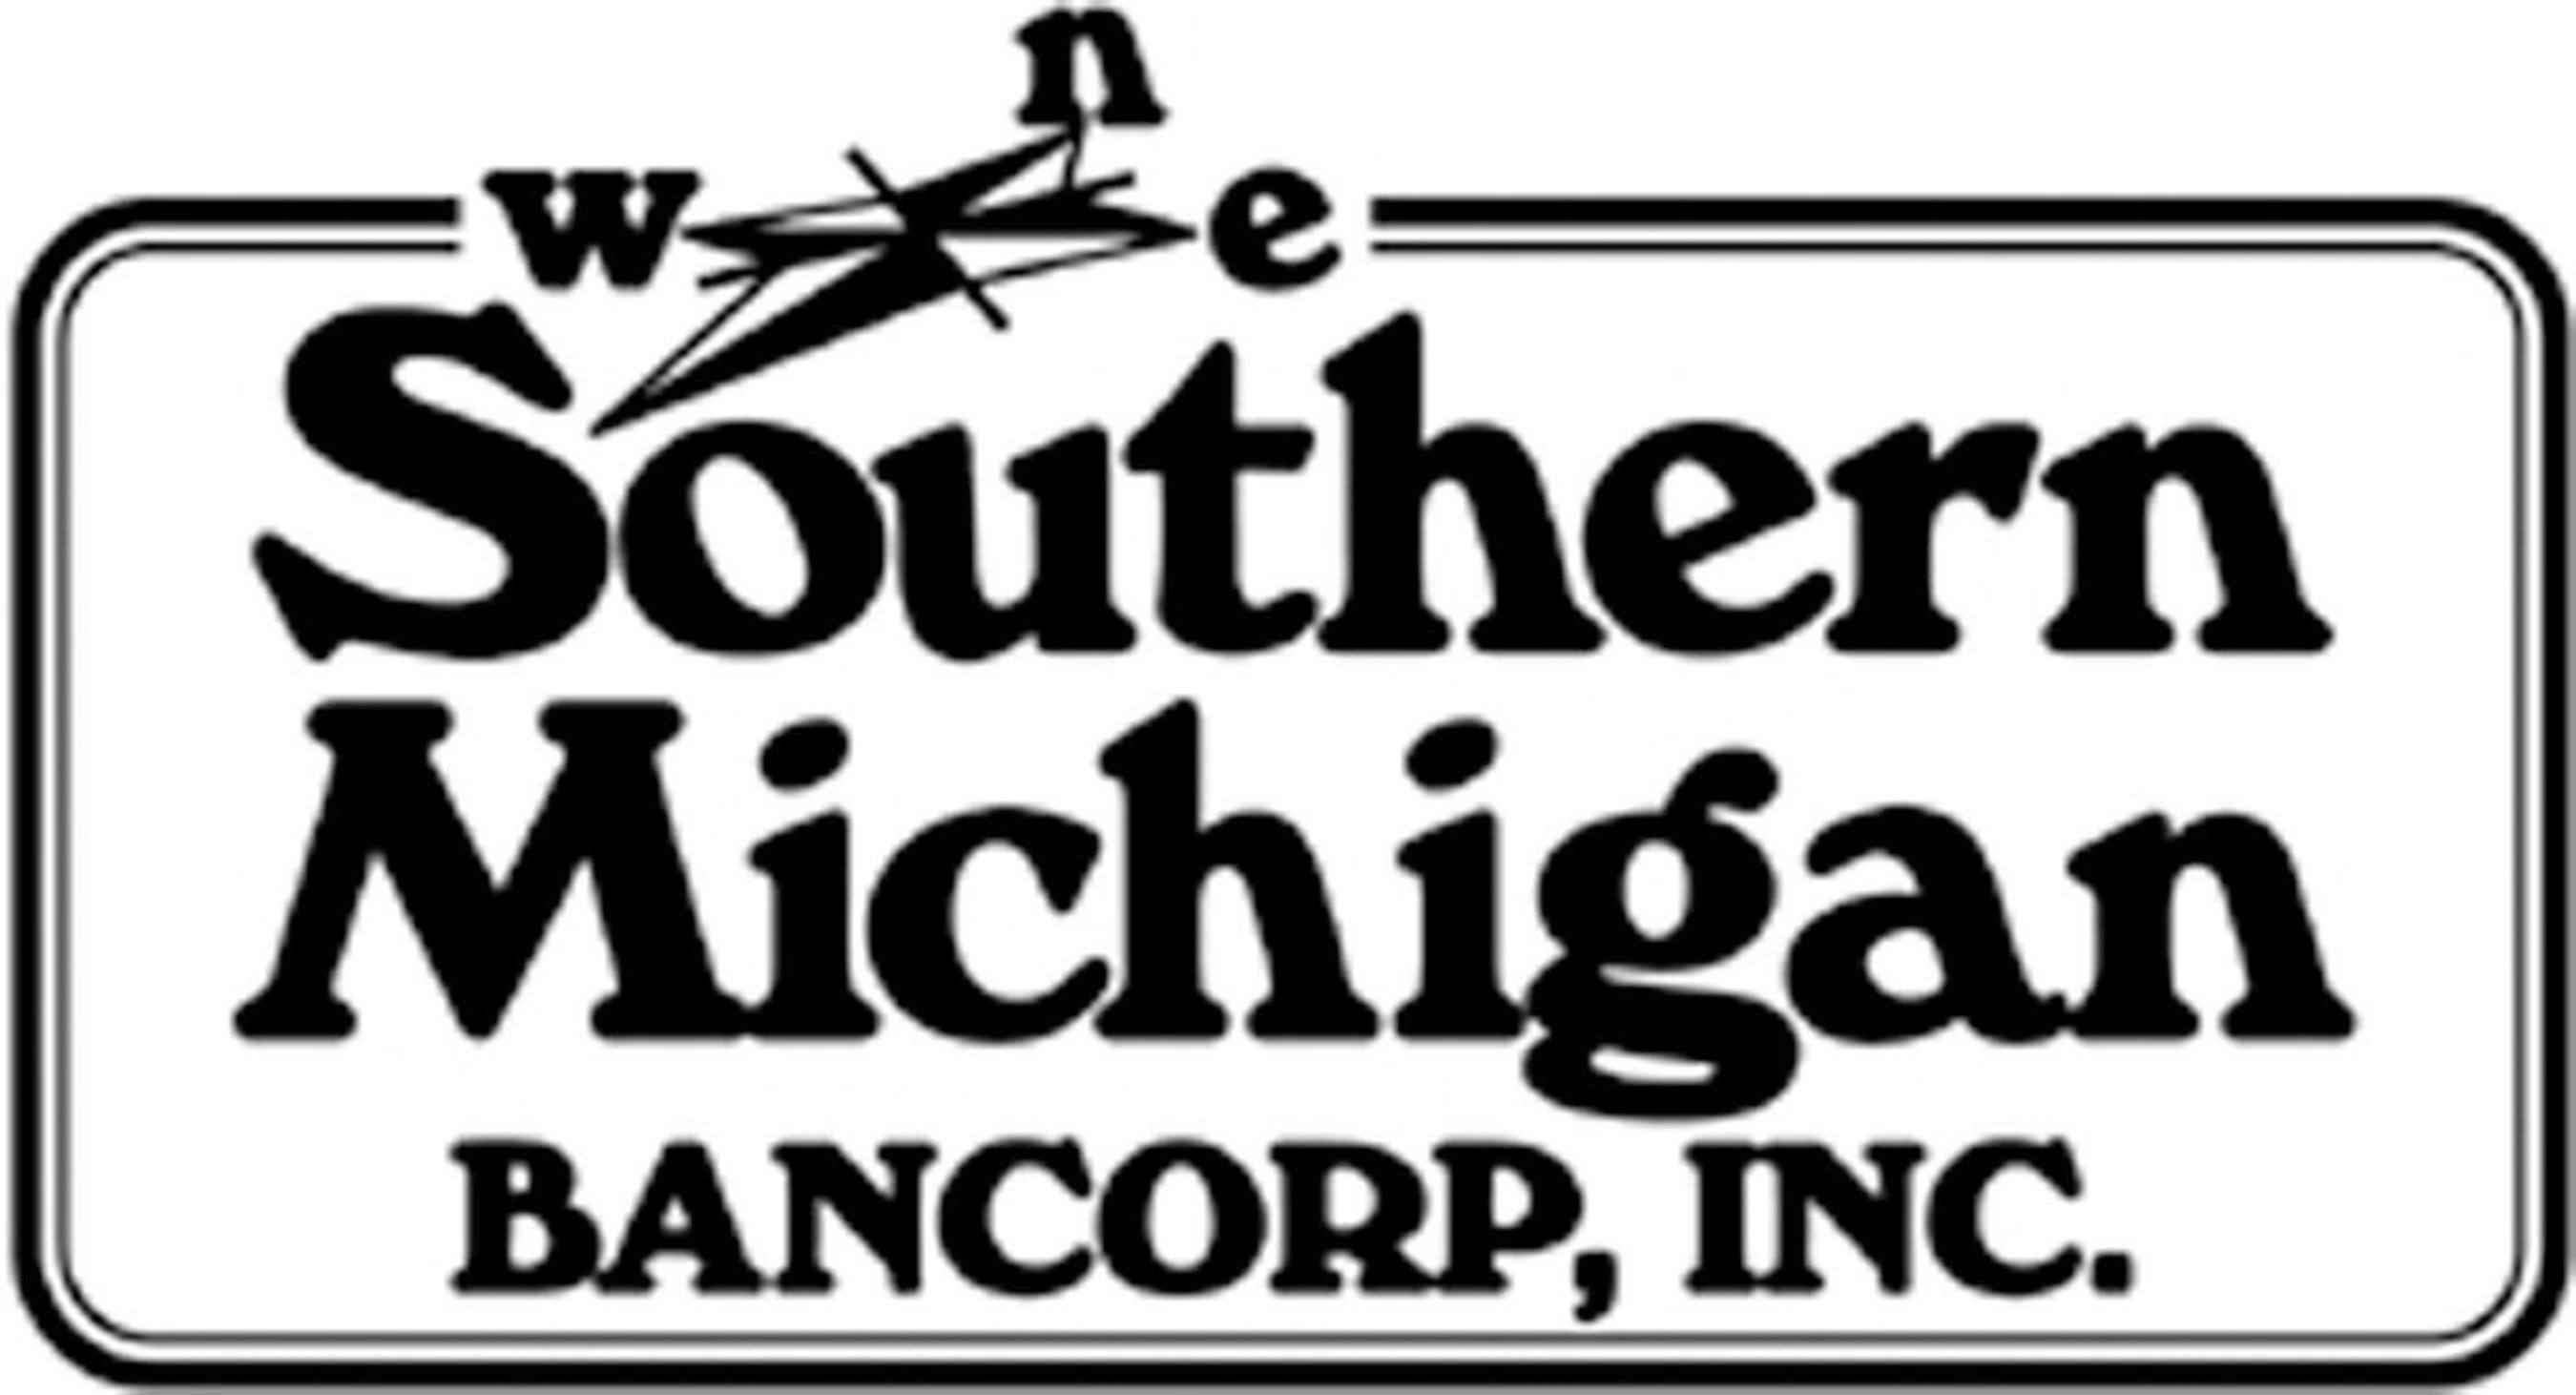 Southern Michigan Bancorp, Inc.